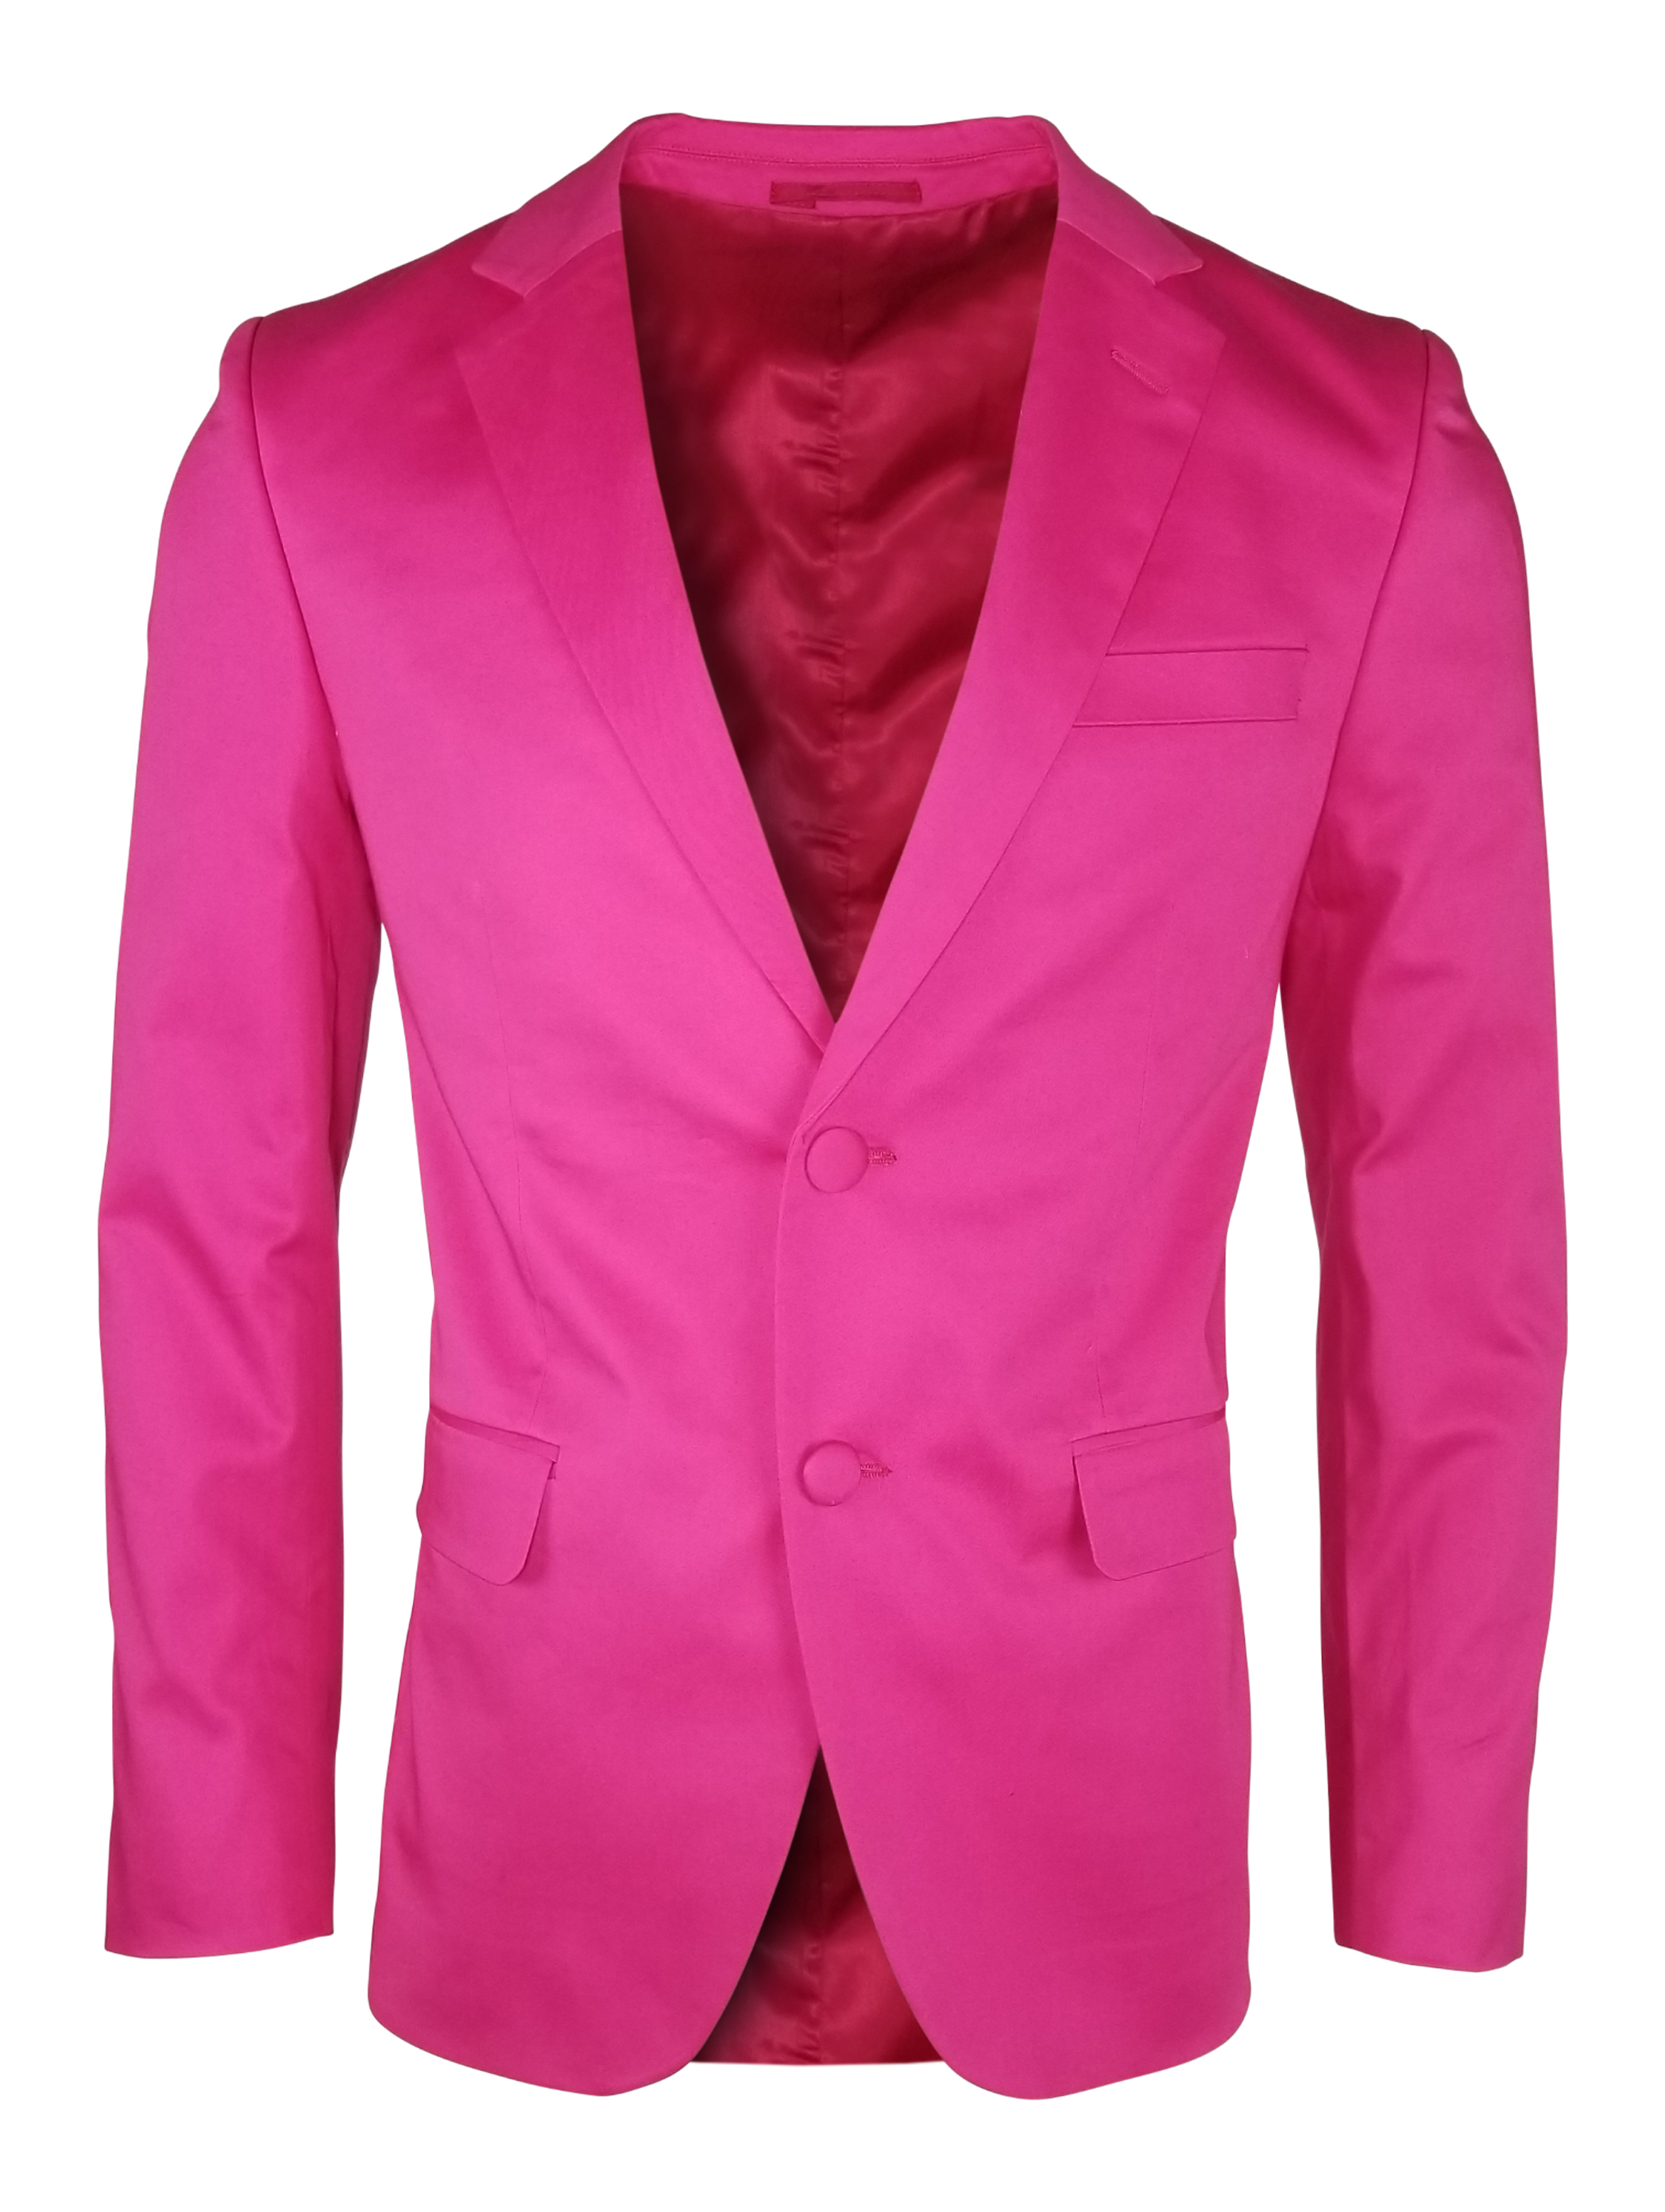 Men's Cotton Jacket - Hot Pink - Uniform Edit